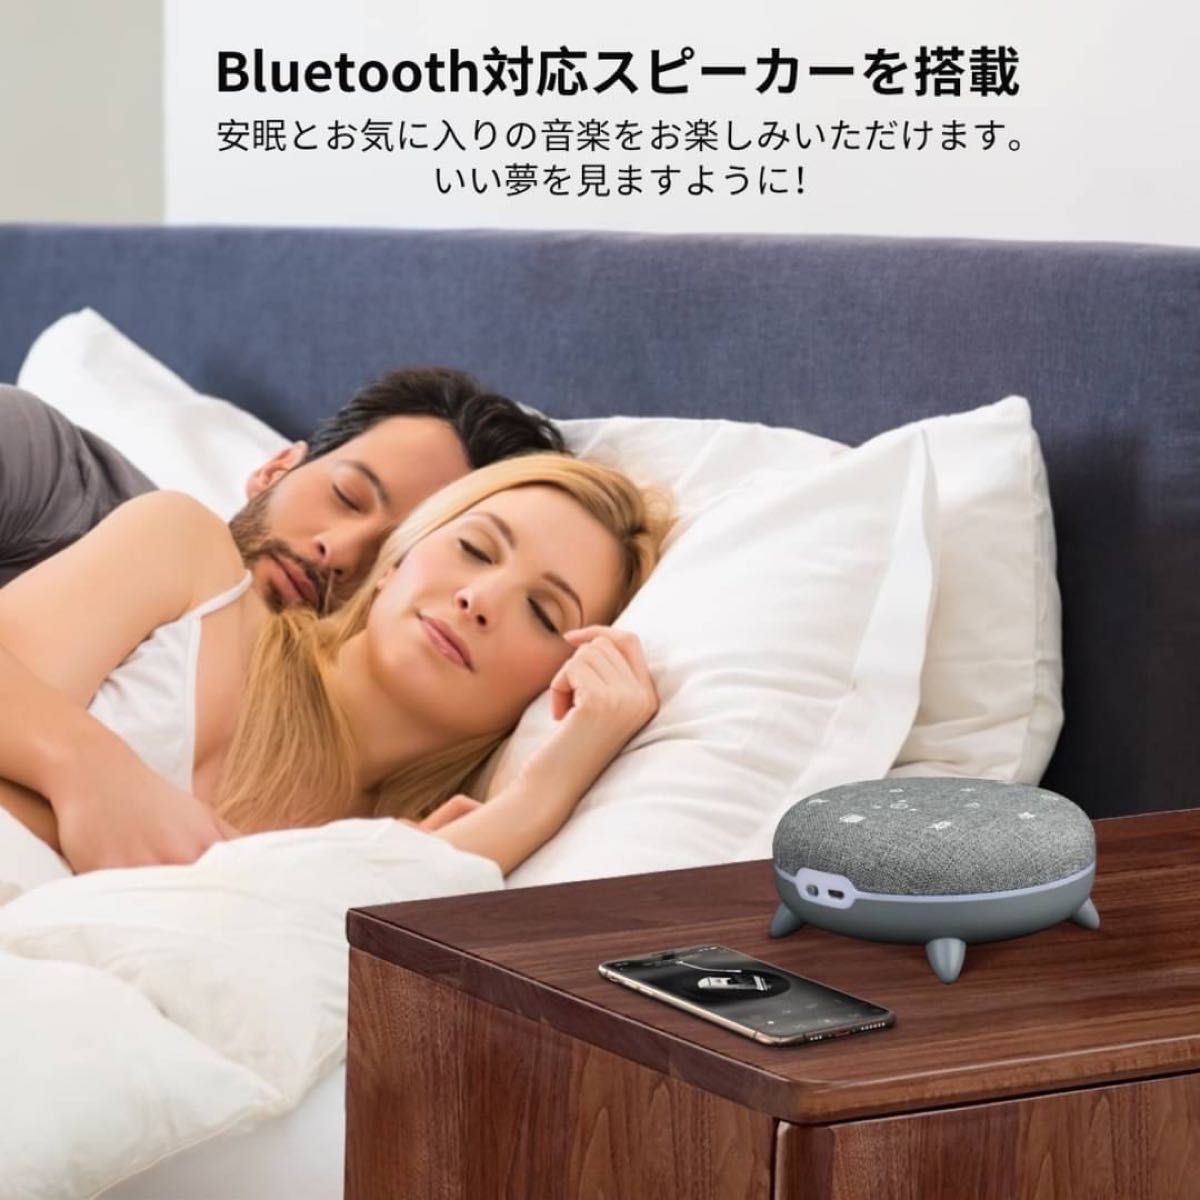 ホワイトノイズマシン スピーカー Bluetooth リラックス 快眠 安心 夜泣き 寝かしつけ 心地よい 穏やか 自然